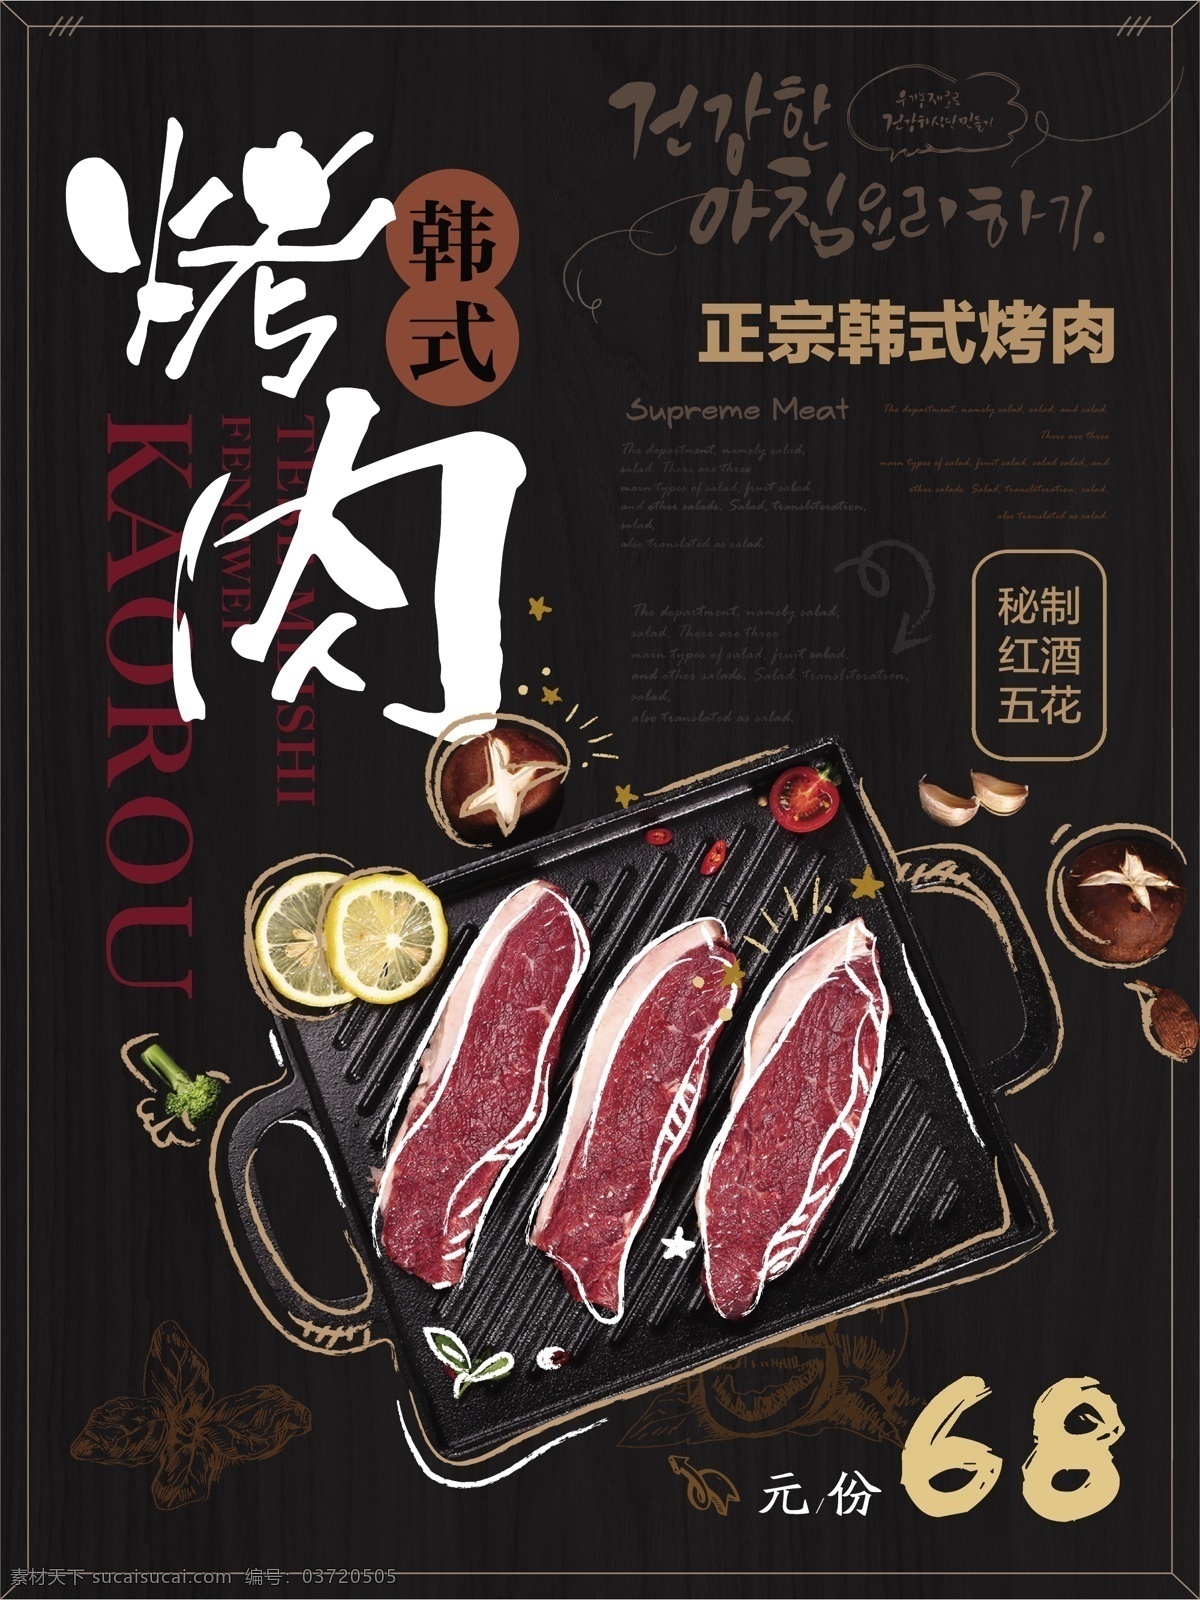 简约 风 创意 手绘 描 韩式 烤肉 海报 简约风 烤肉店 创意手绘描边 韩式烤肉 健康 美食 宣传 插画风